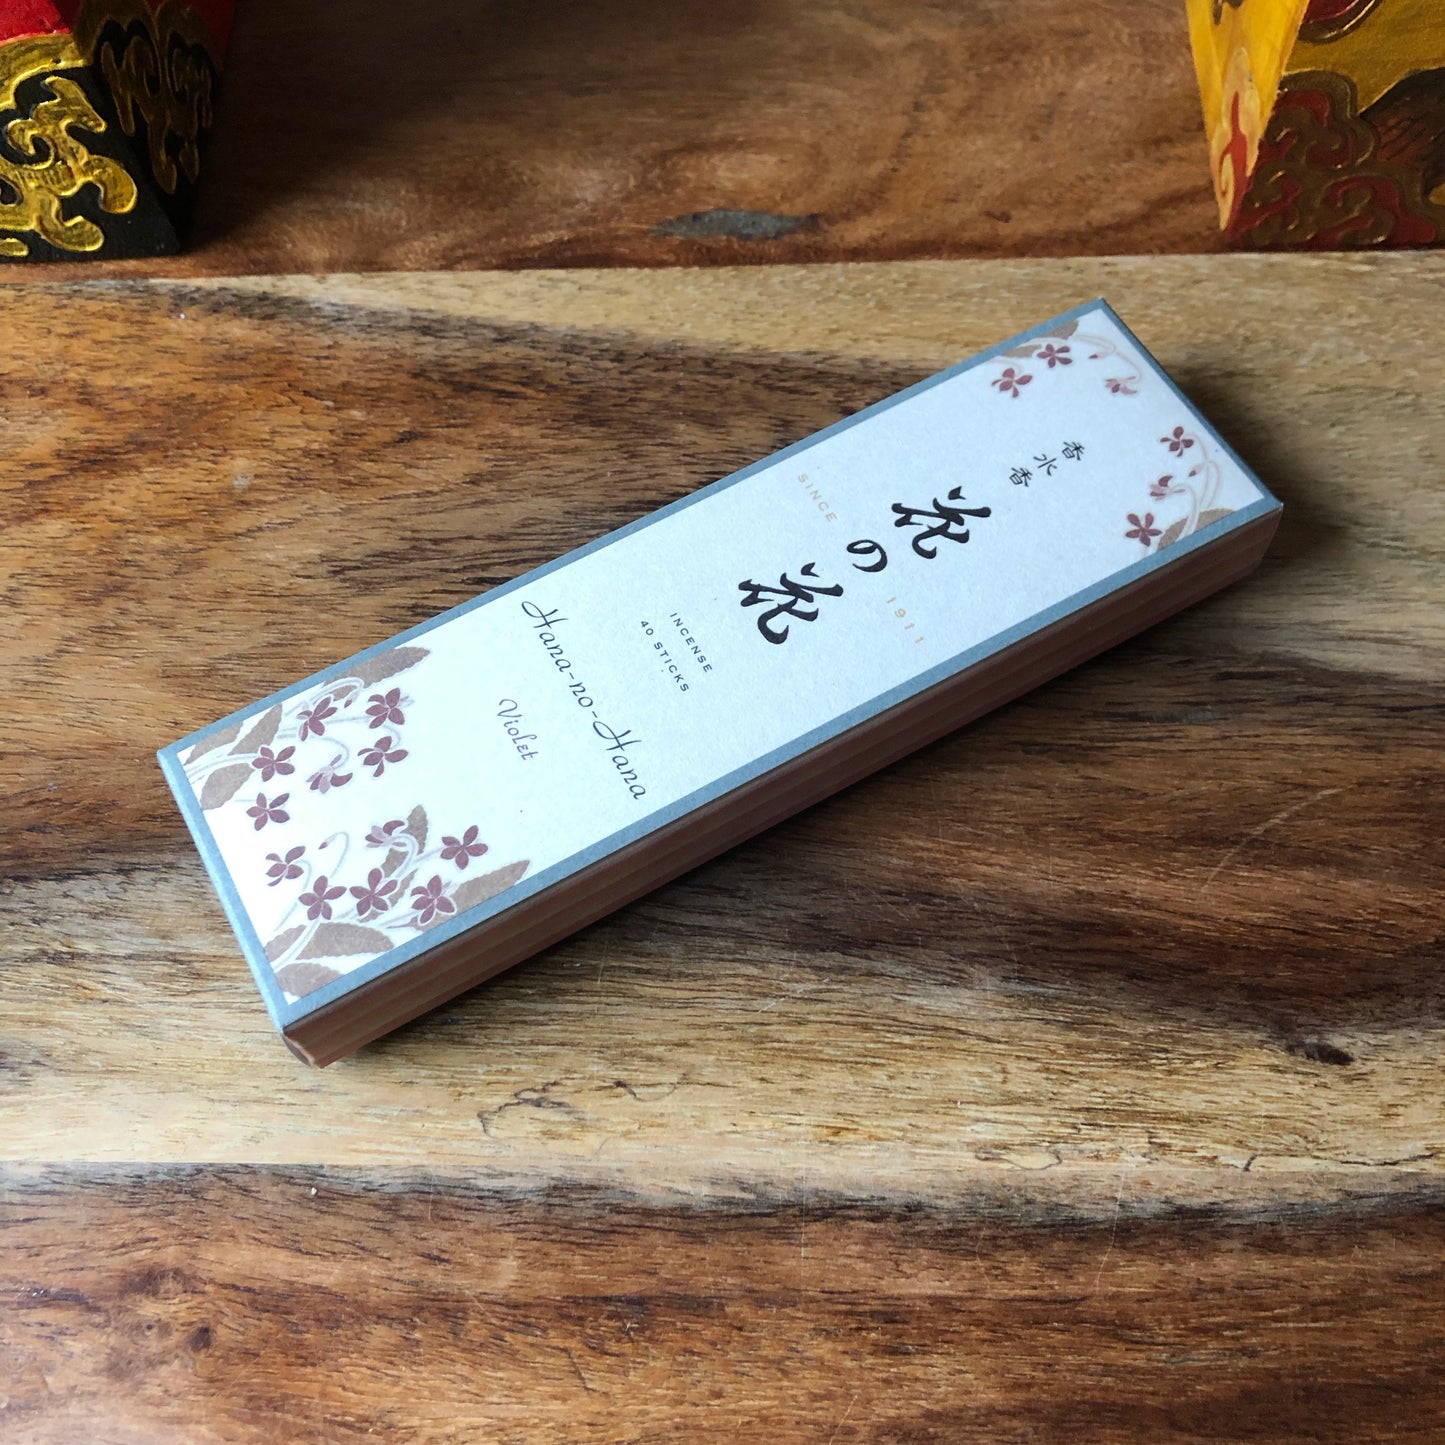 Hana No Hana Violet Incense (40 Sticks)